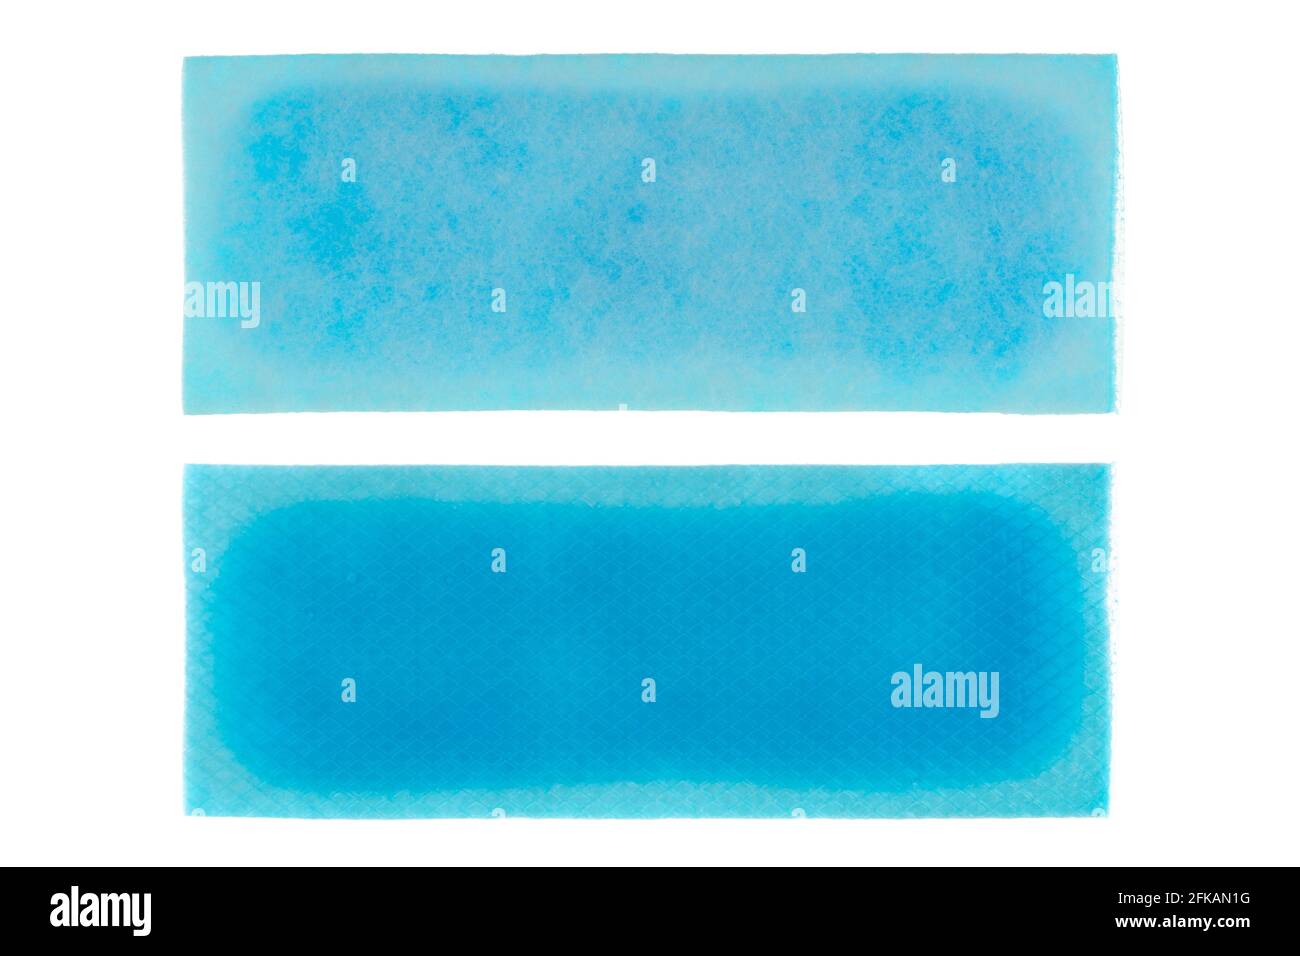 Foglio di gel a raffreddamento rapido per alleviare la febbre, cerotto di idrogel blu isolato su sfondo bianco Foto Stock